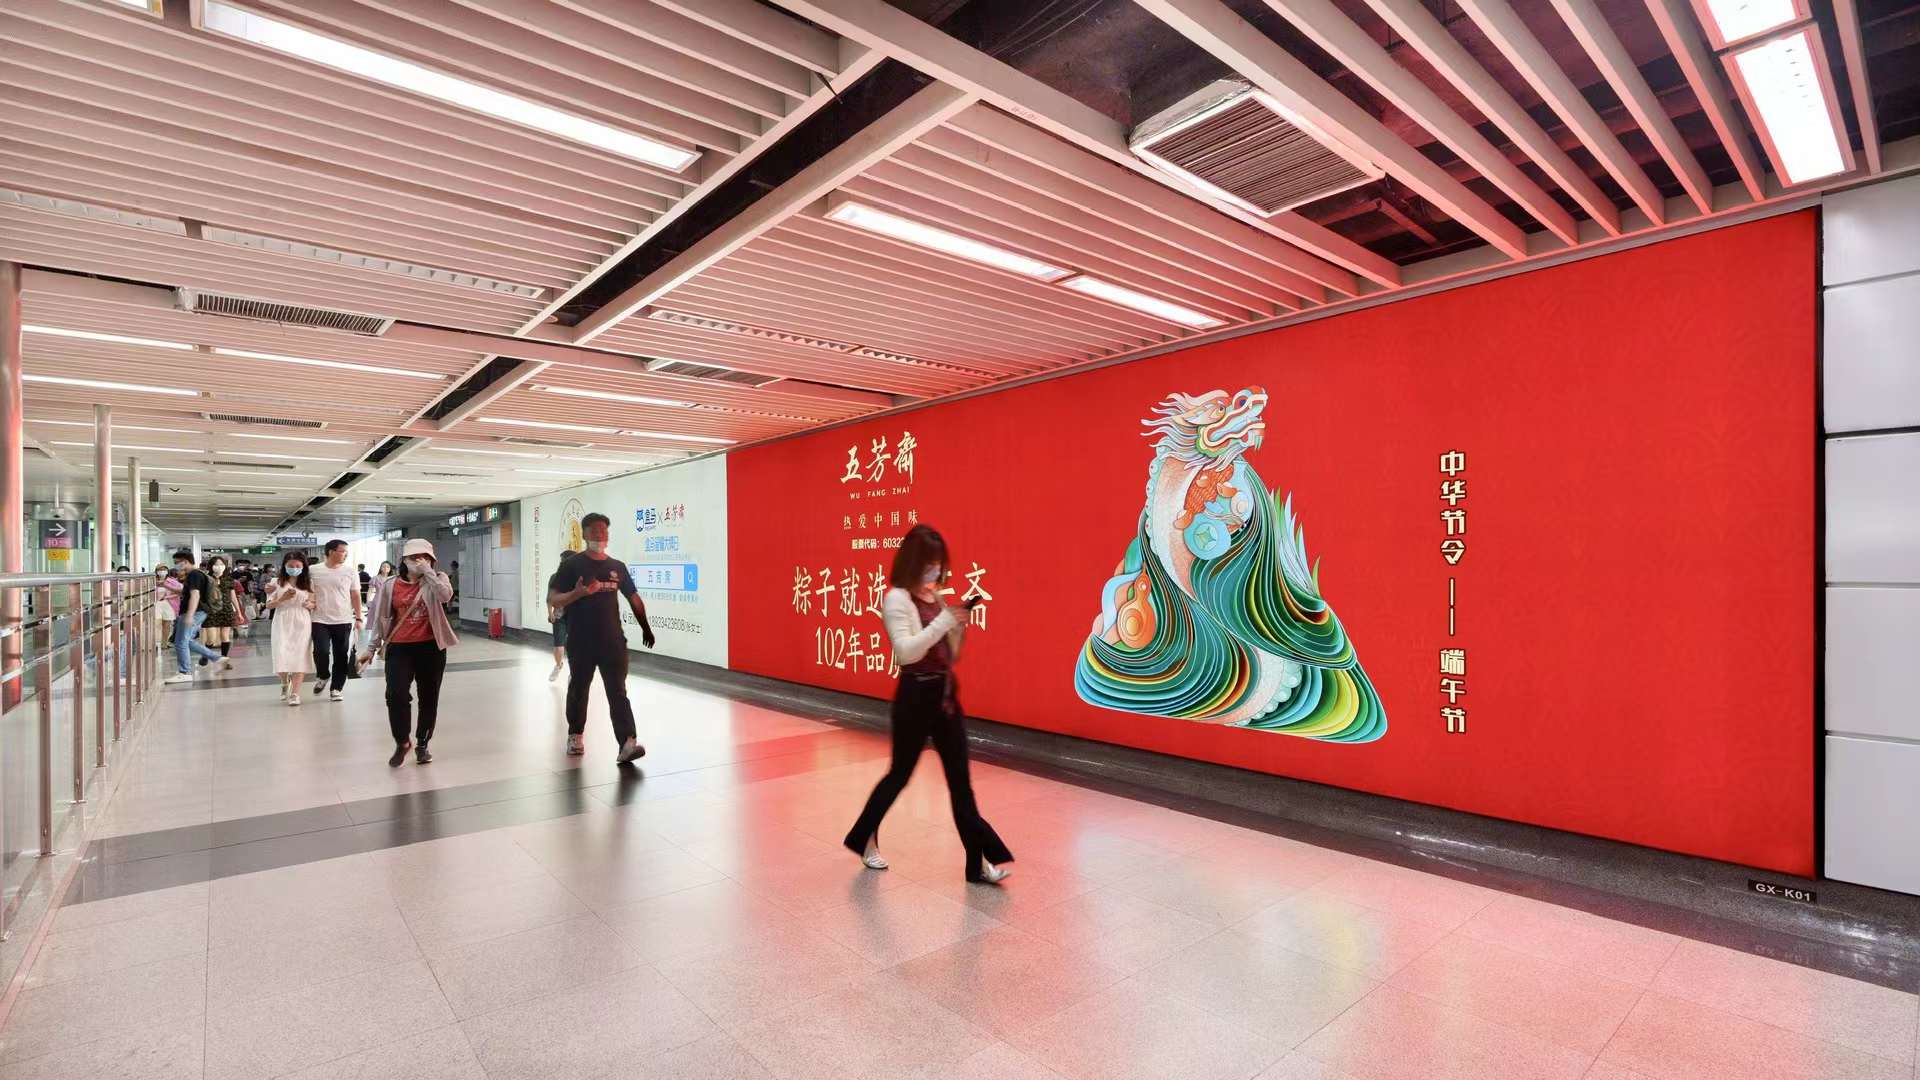 深圳地铁广告比大众媒体宣传好在哪里